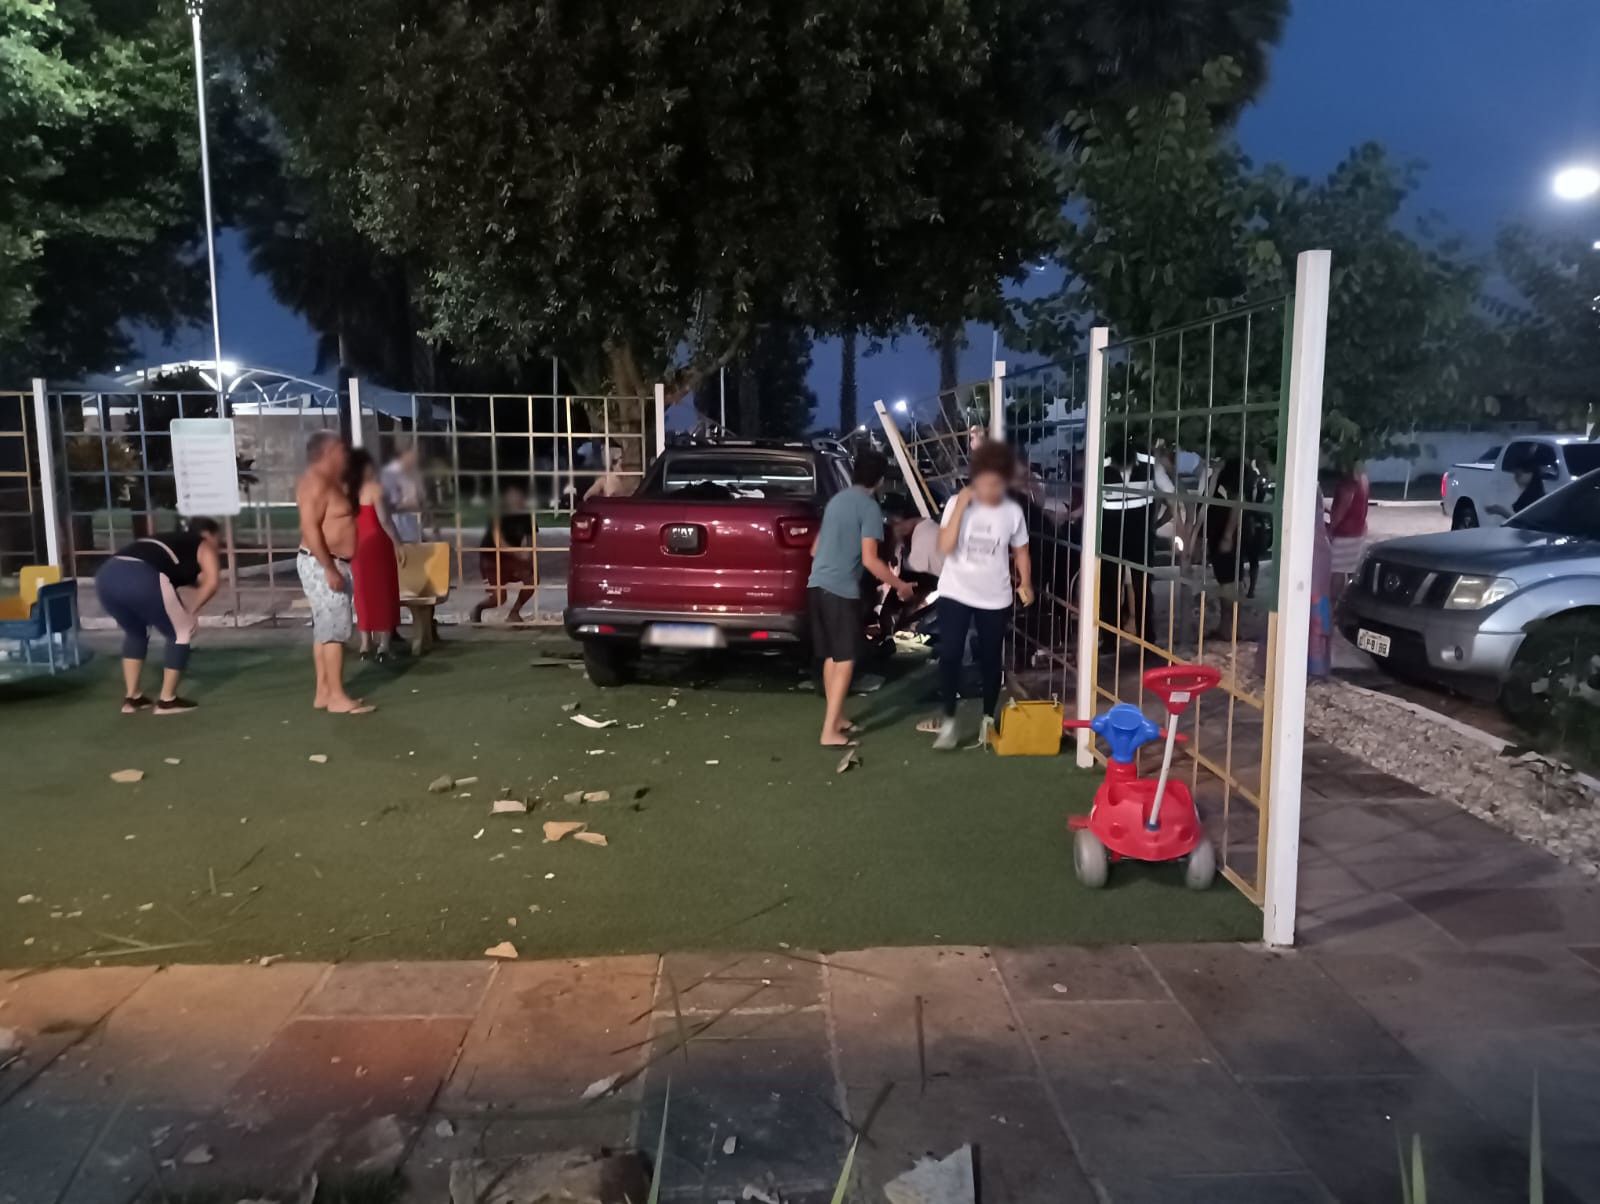 Criança que morreu atropelada em playground de condomínio em Timon (MA) brincava no balanço e mãe foi 'arremessada', diz polícia